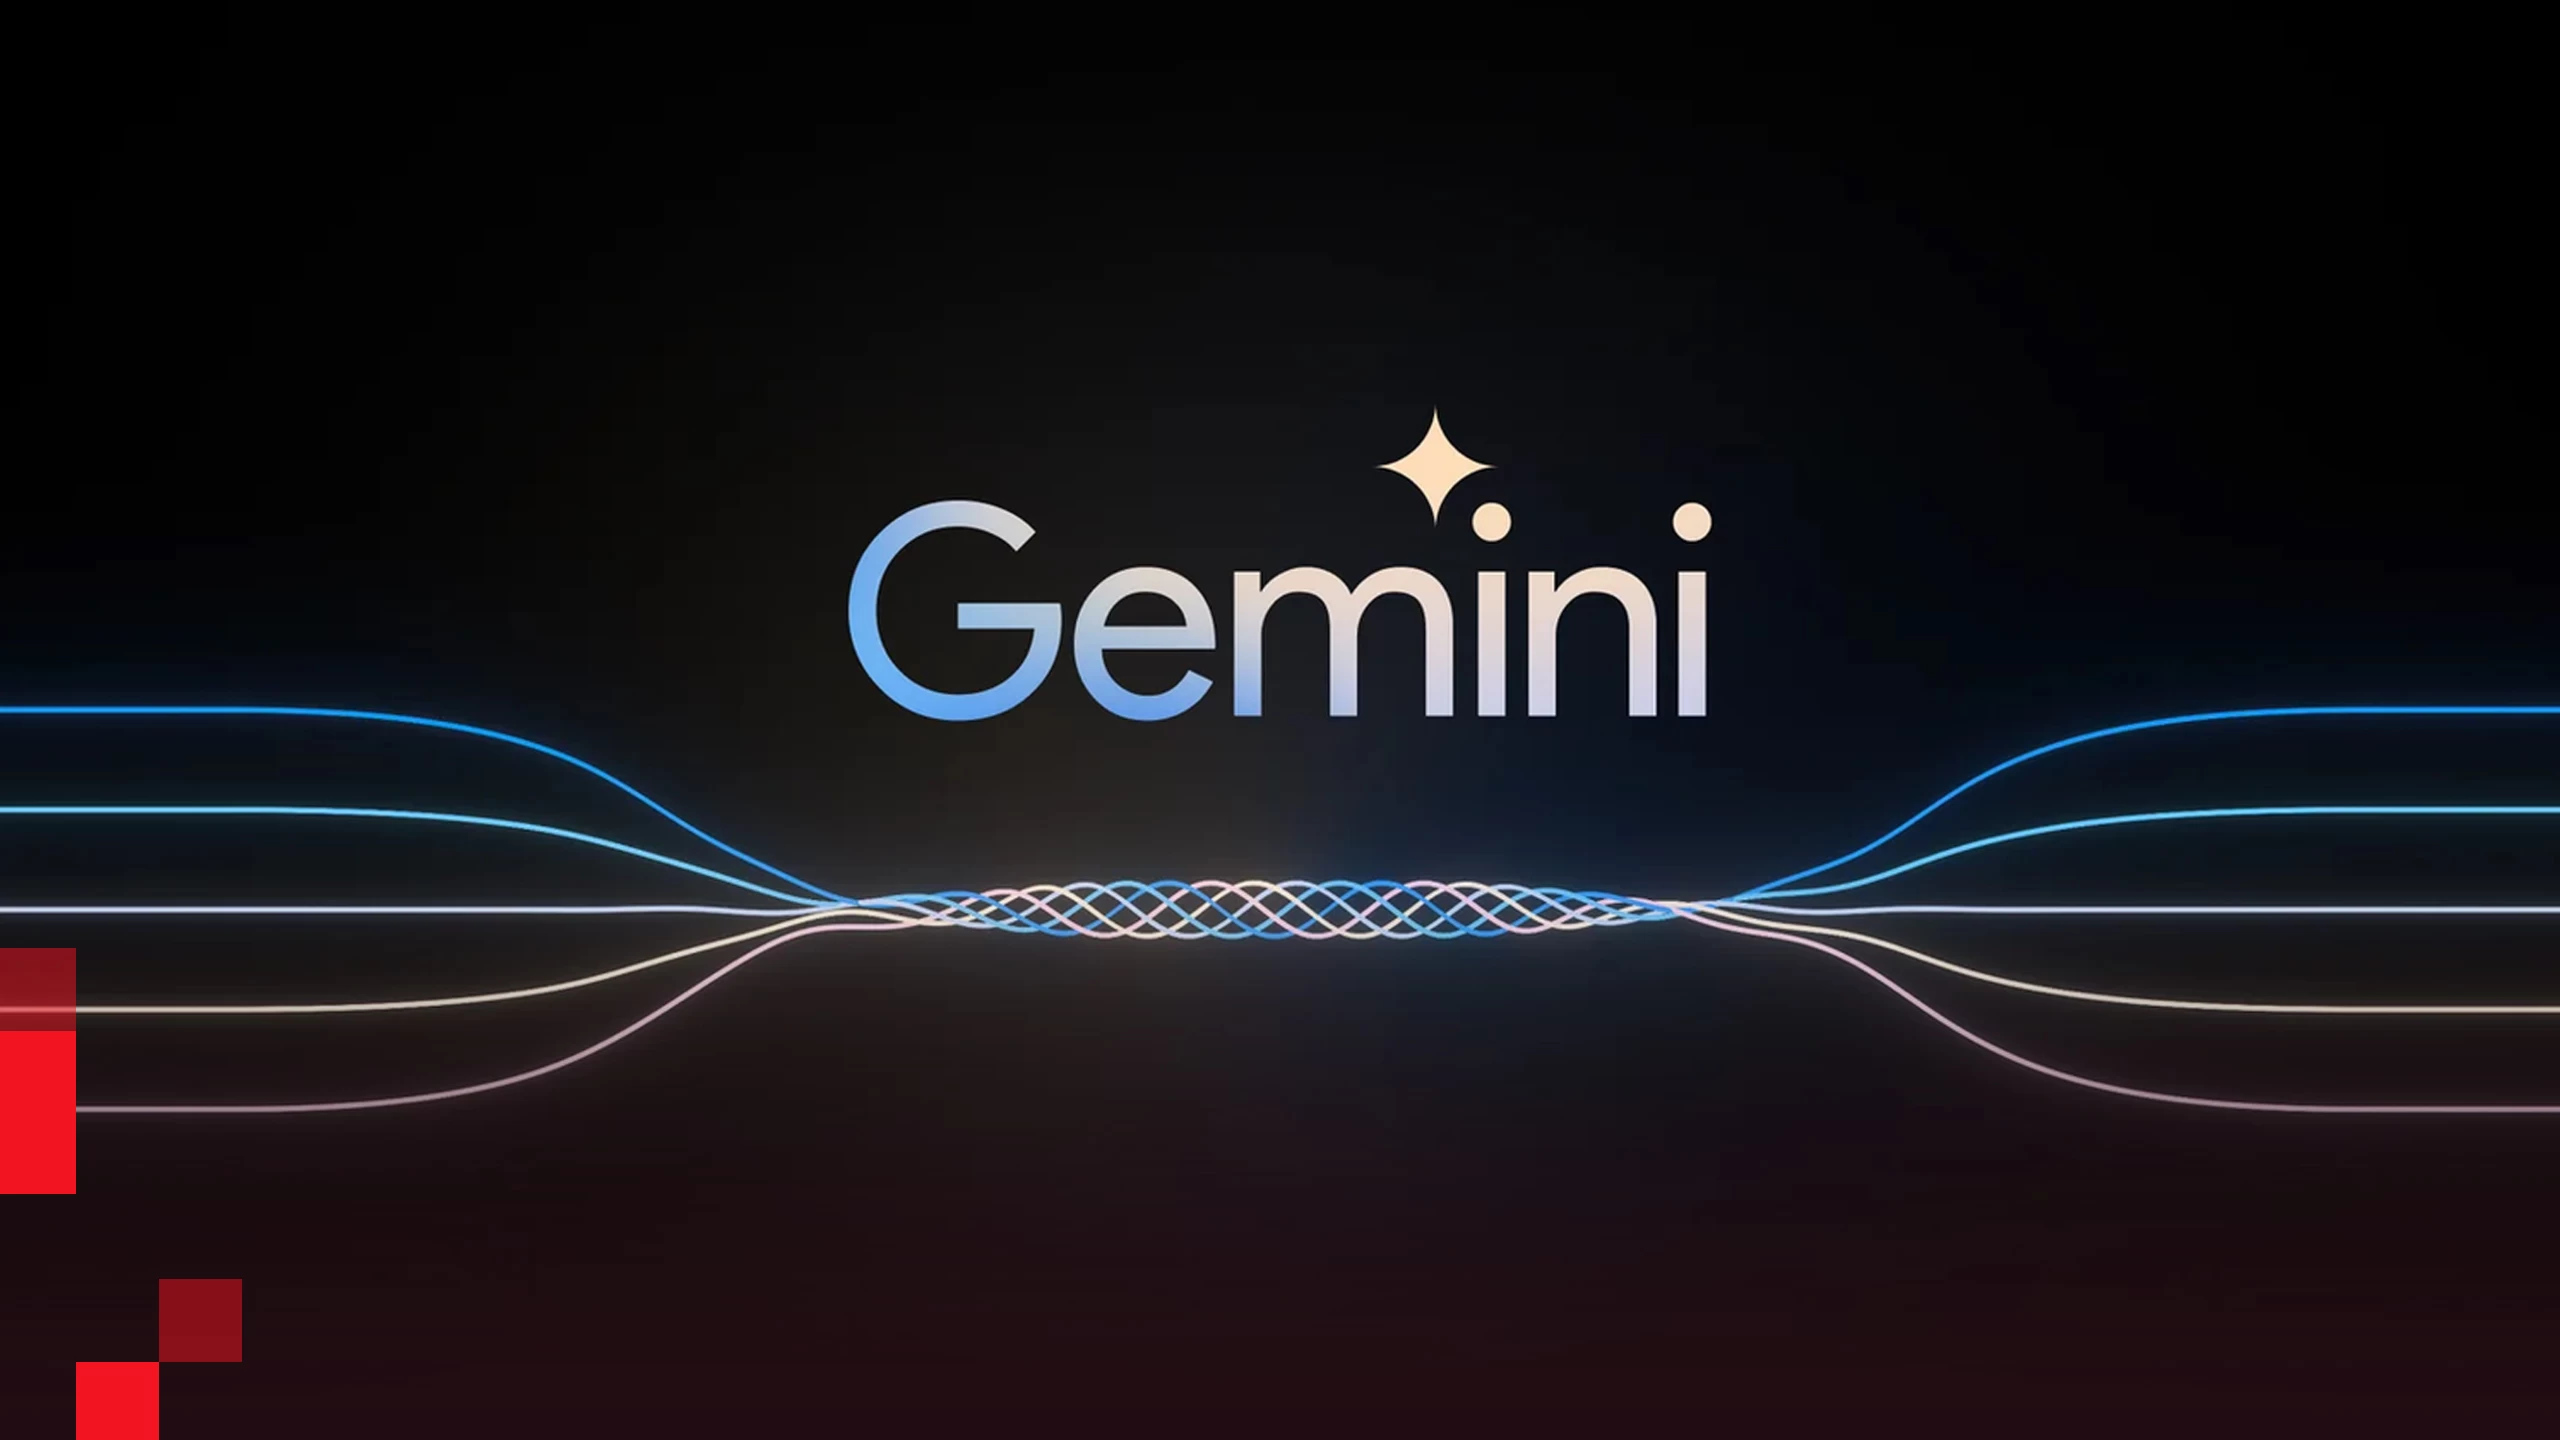 صورة نموذج Gemini للذكاء الاصطناعي المطور من جوجل